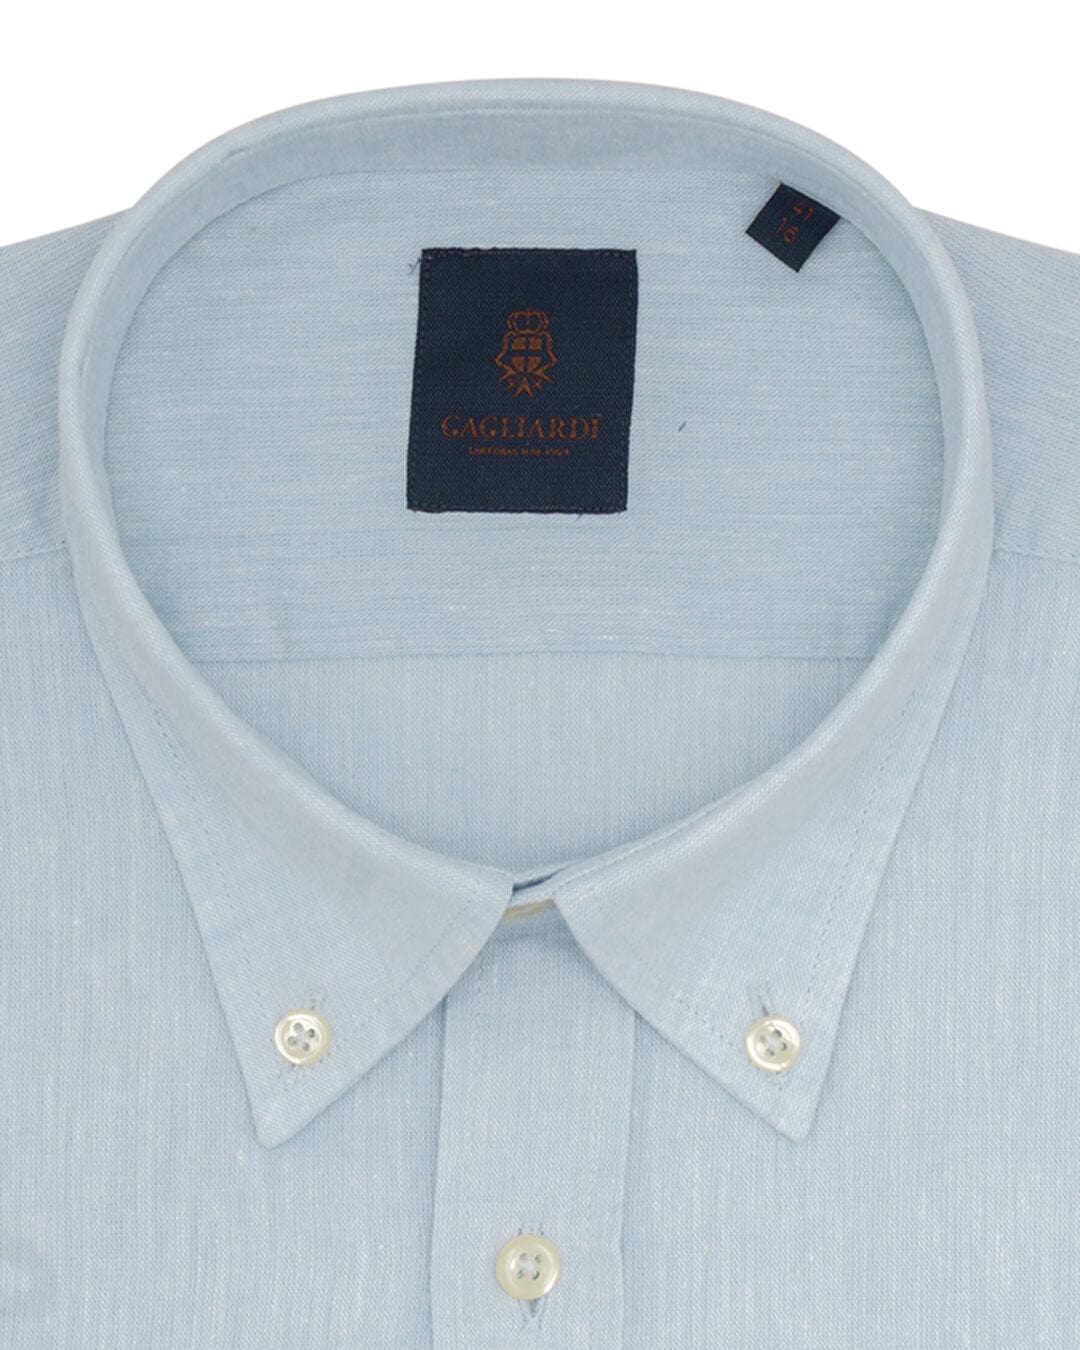 Aqua Blue Plain Slim Fit Long Sleeve Buttondown Collar Linen Shirt